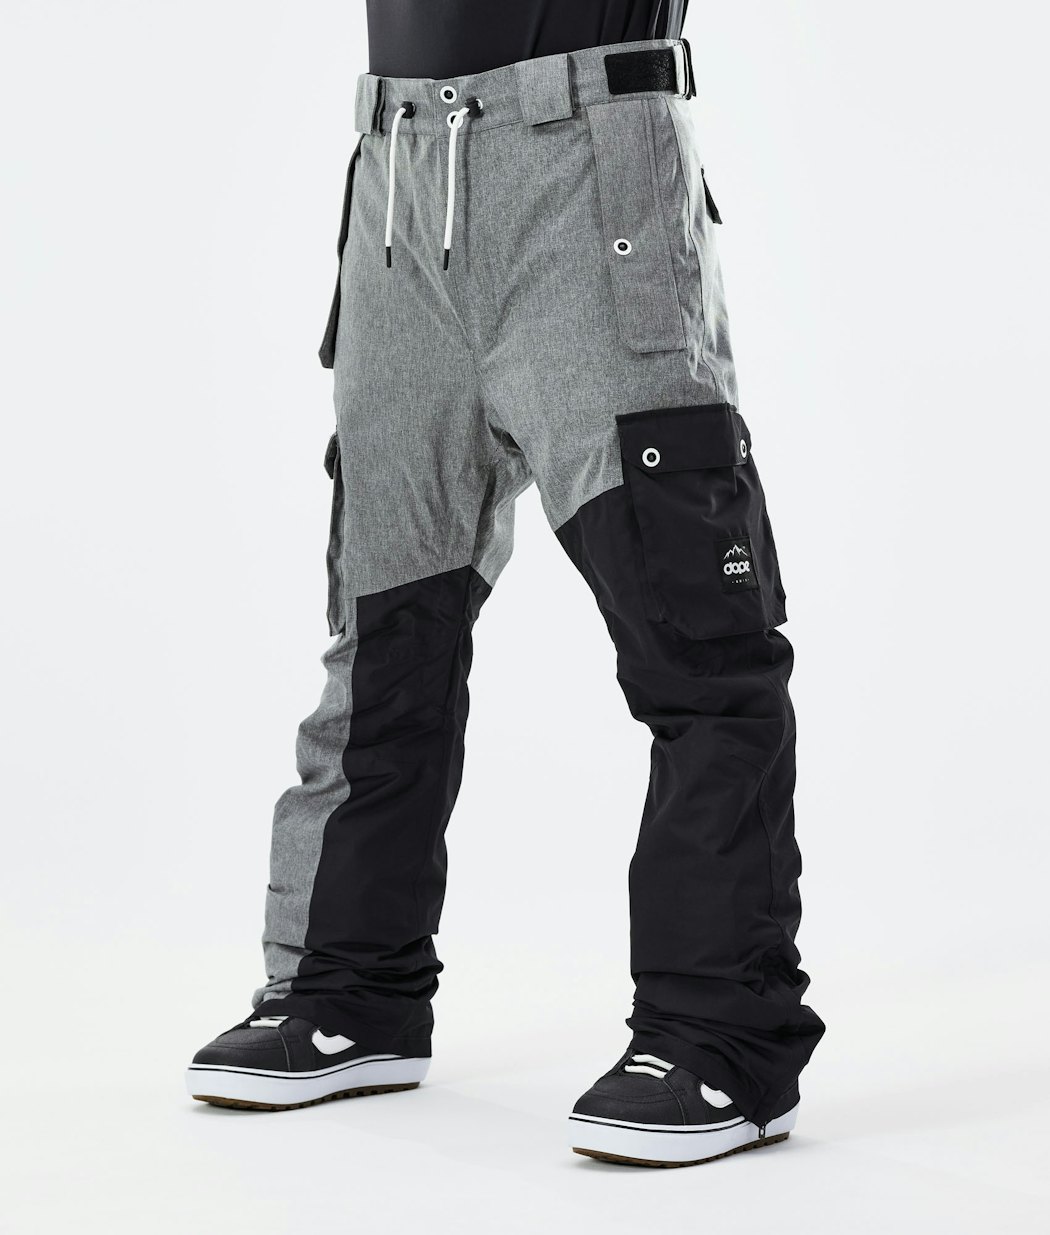 Adept 2020 Kalhoty na Snowboard Pánské Grey Melange/Black